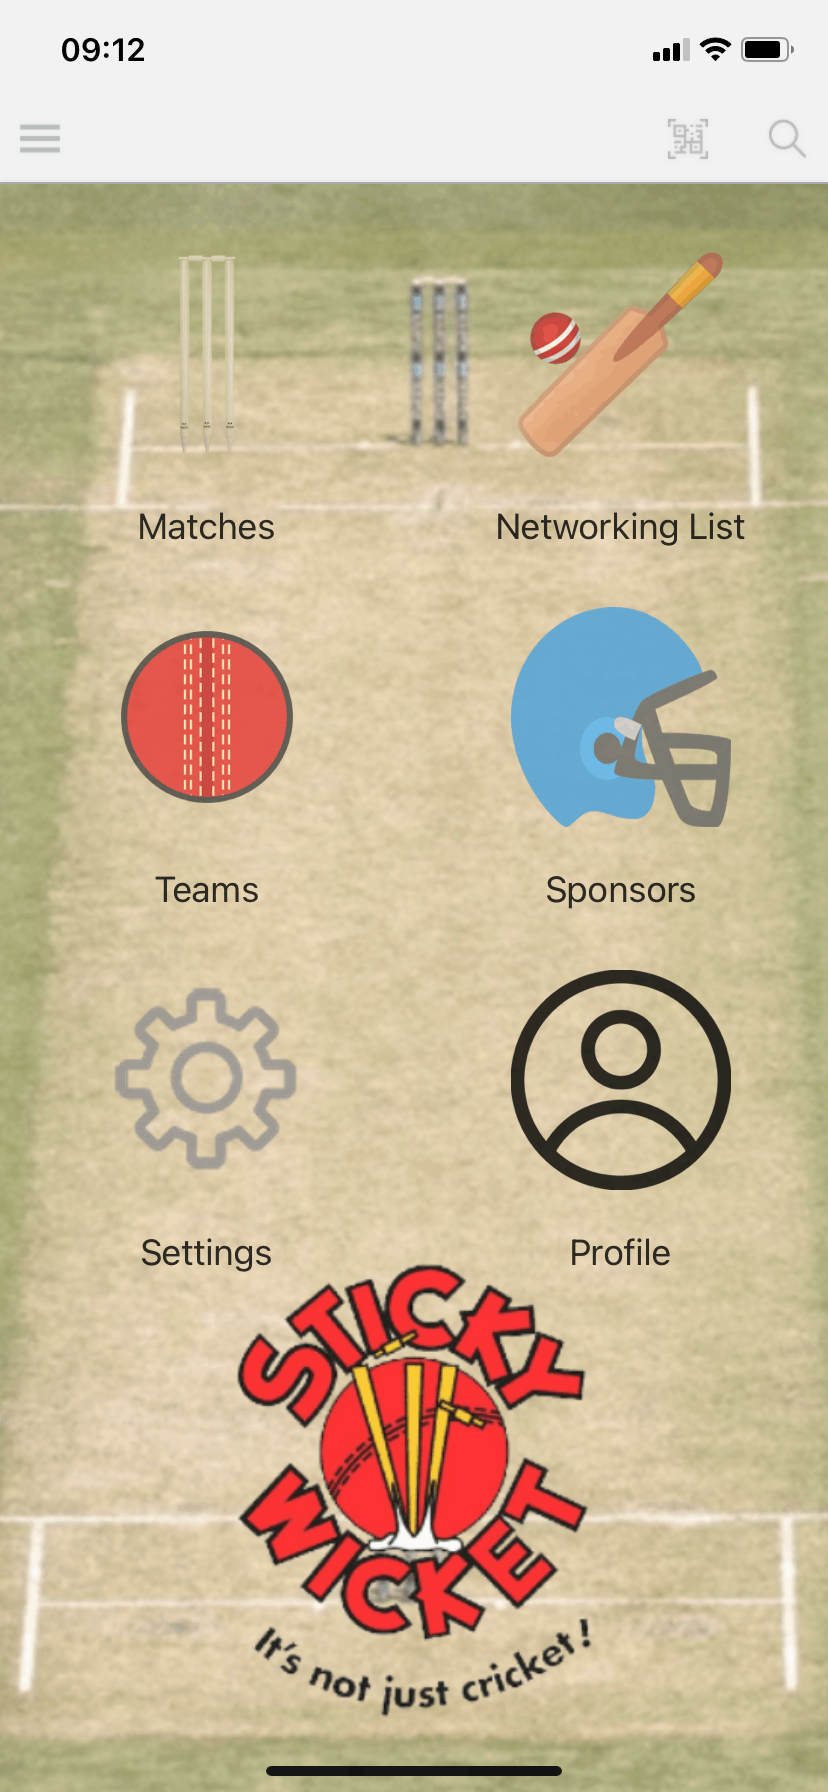 Sticky Wicket event app menu screen by VenuIQ